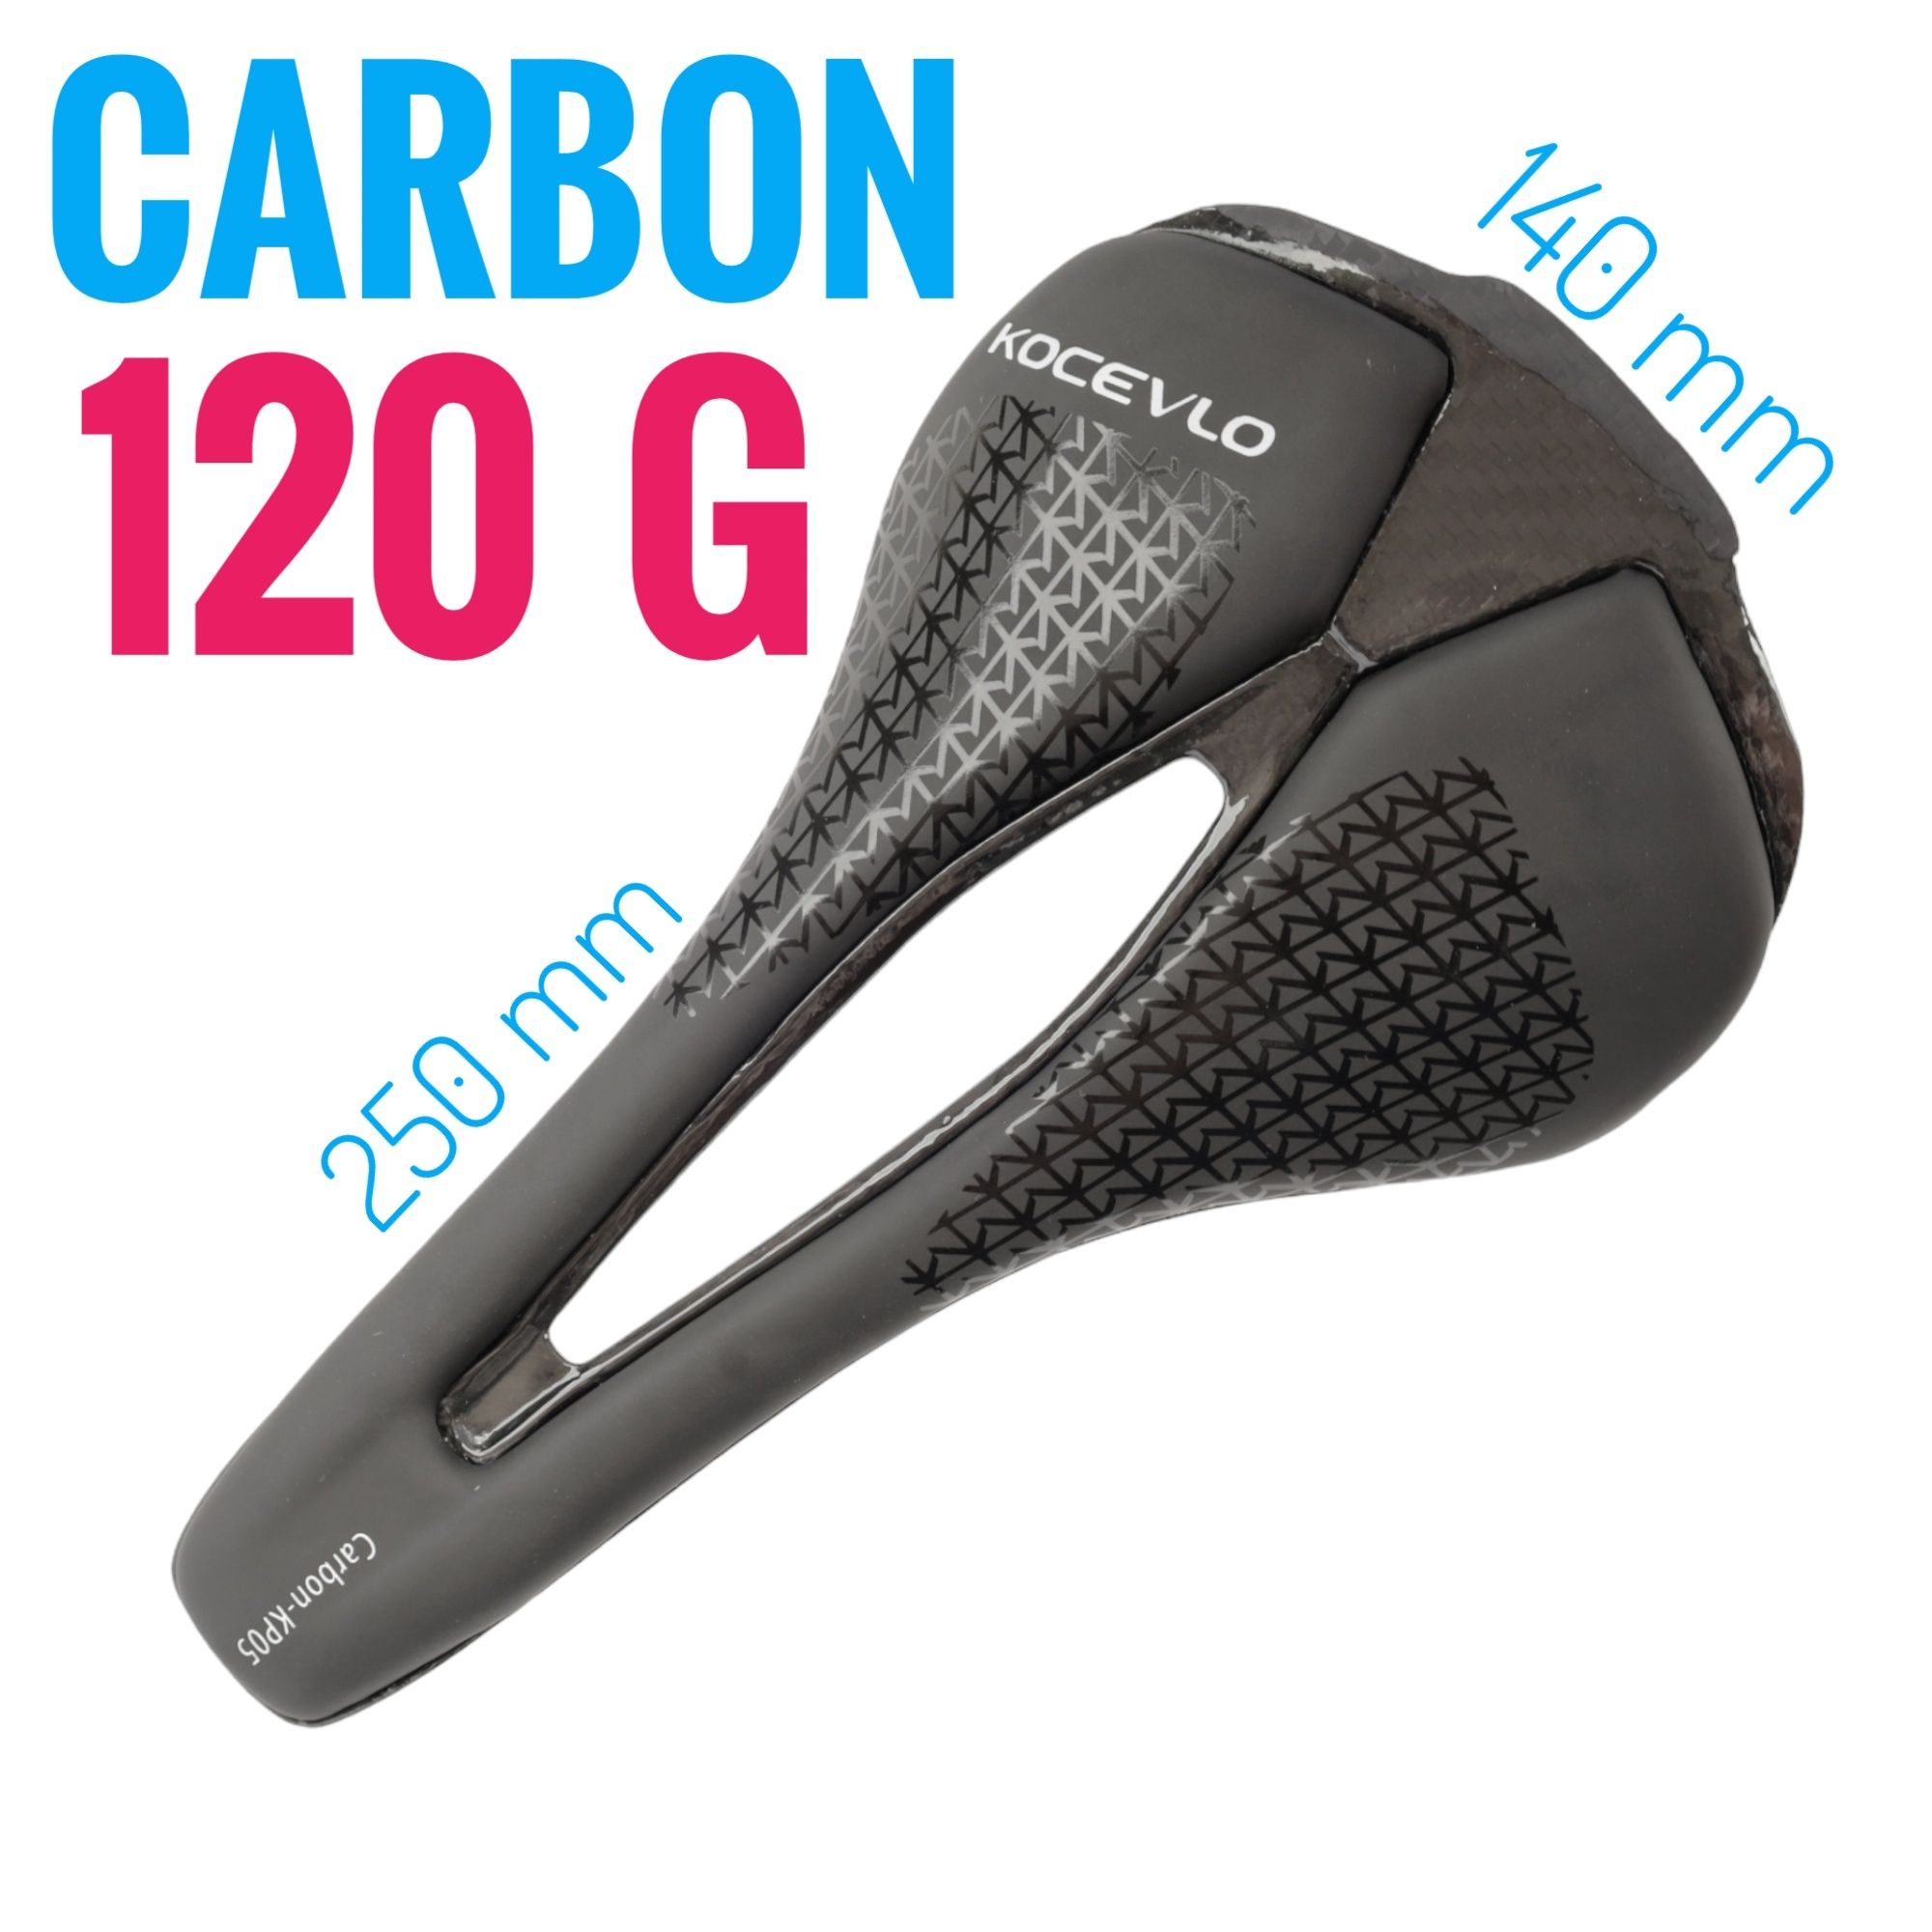 Carbon! KOCEVLO siodełko siodło carbonowe szosowe gravel